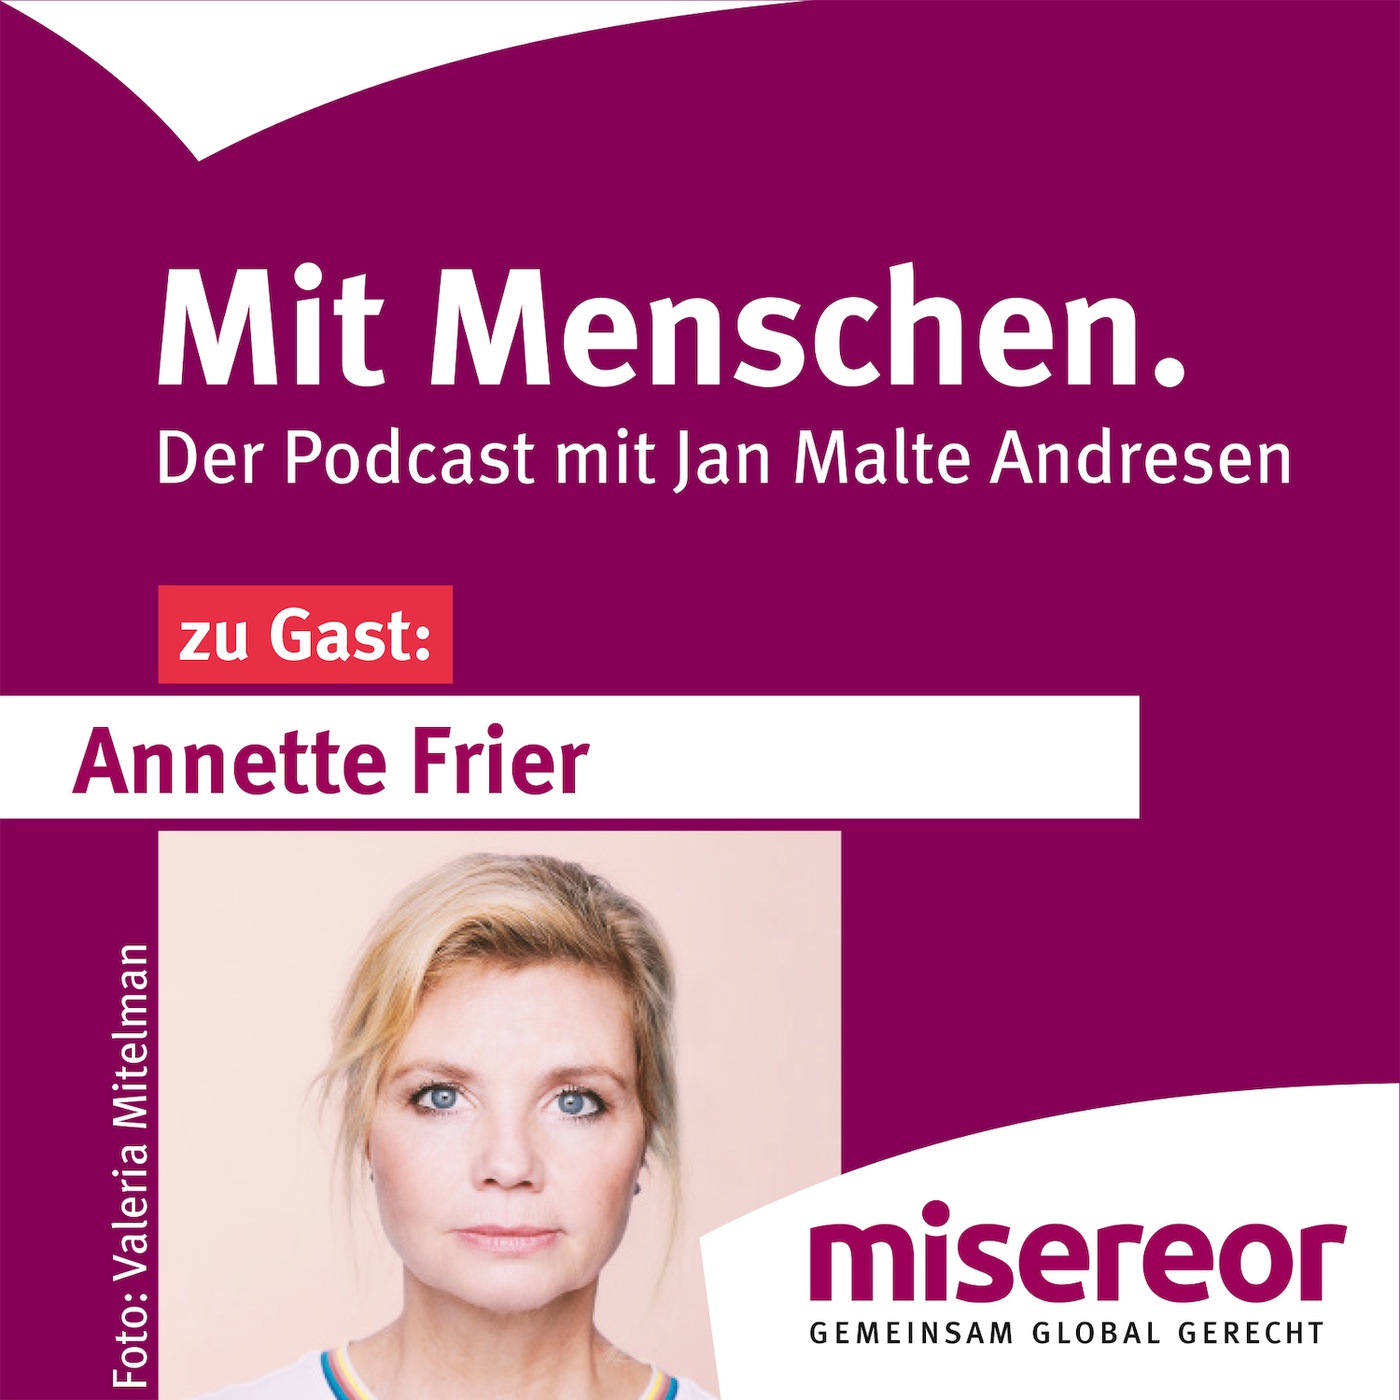 Annette Frier - Empathisch und gemeinsam stark